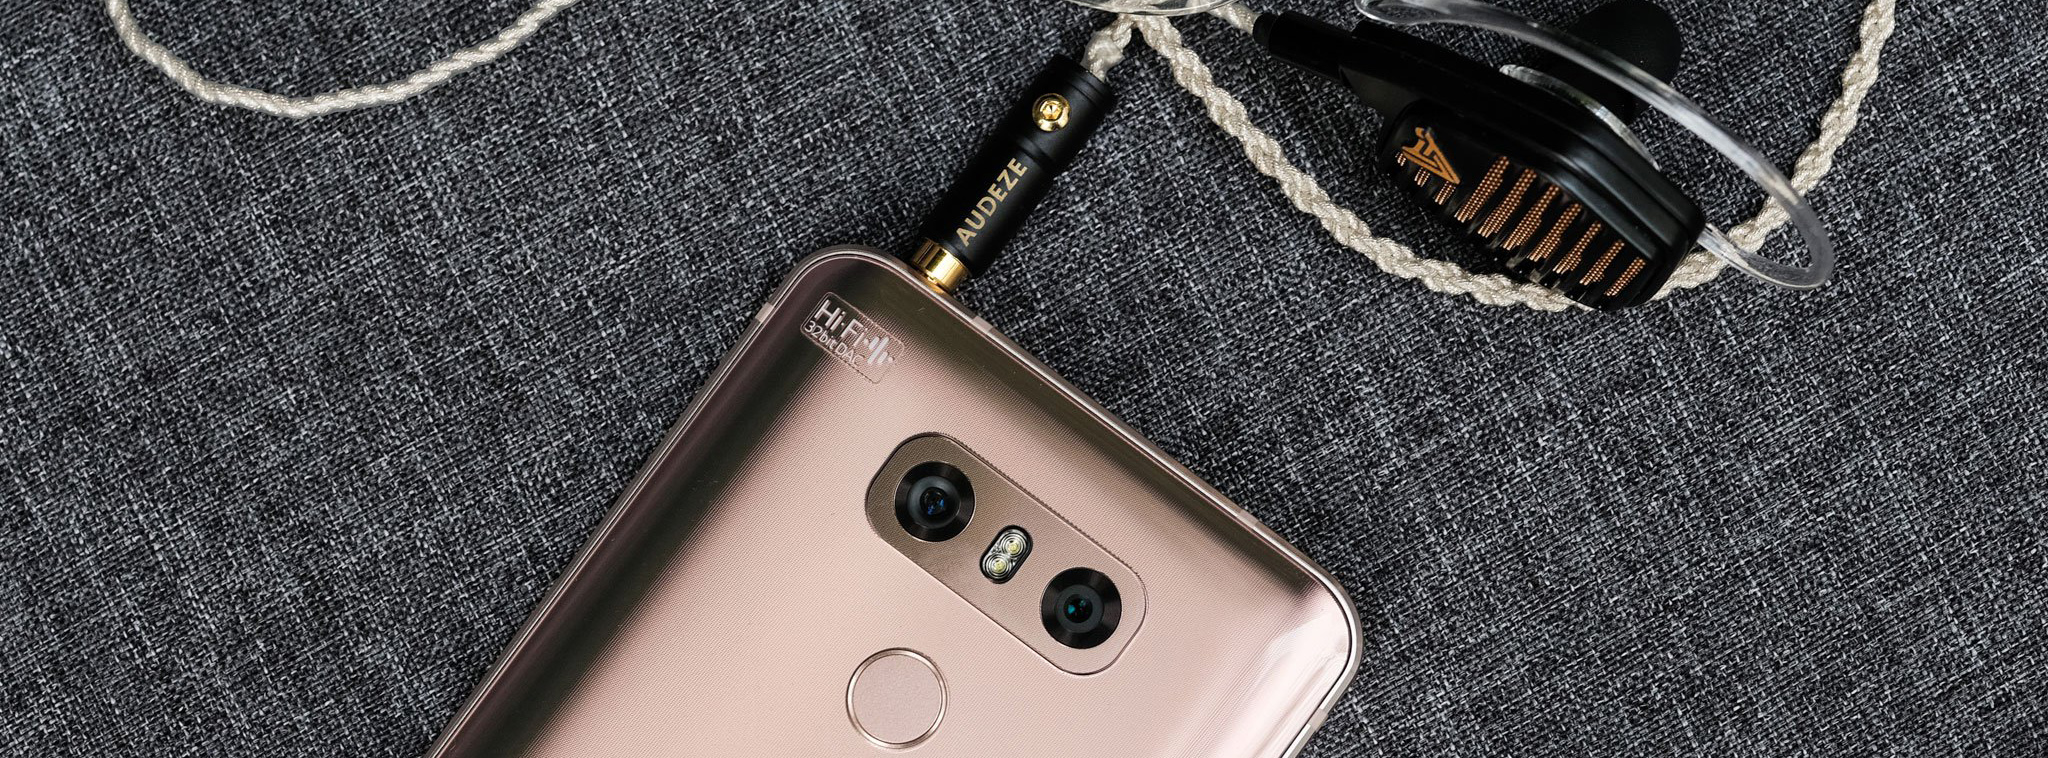 LG sẽ không còn ra mắt điện thoại G trong năm 2018 nữa, LG G6 là chiếc máy cuối cùng